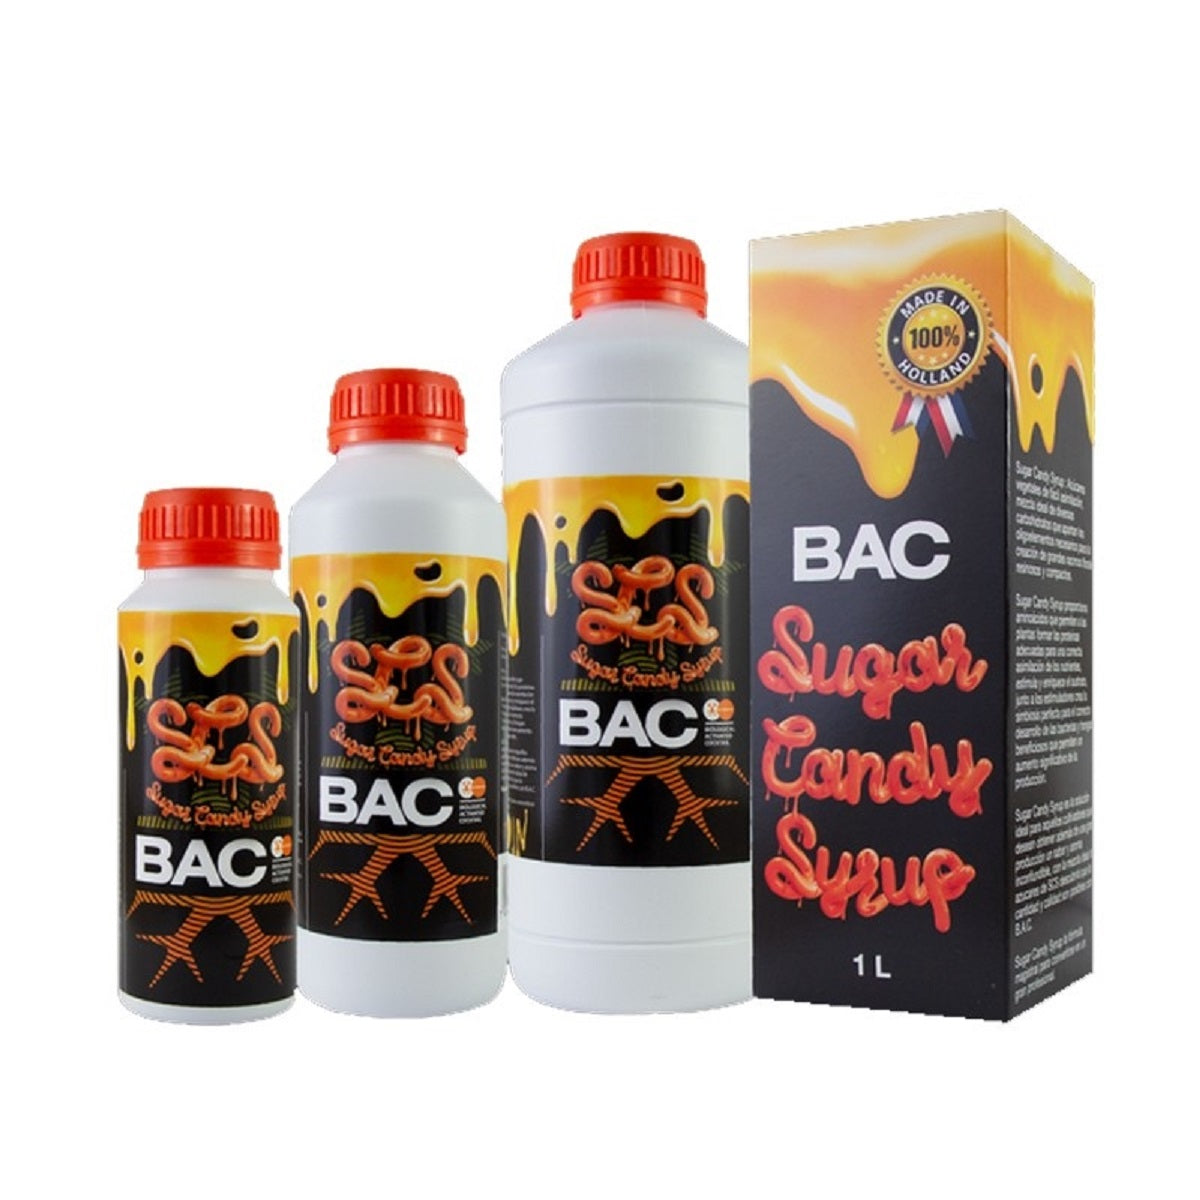 Stmulateur de loraison BAC Sugar Candy Syrup 500ml